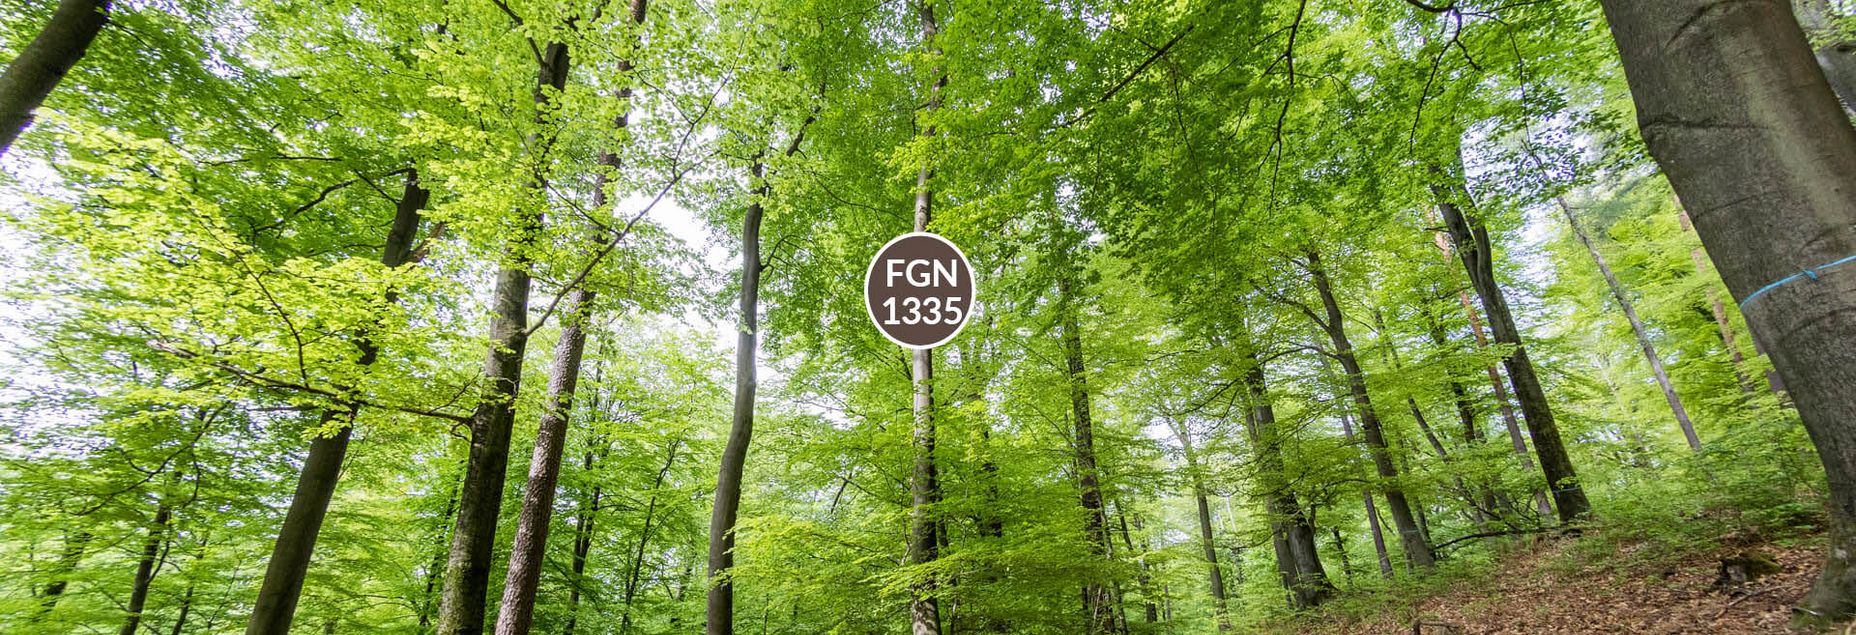 Baum FGN 1335